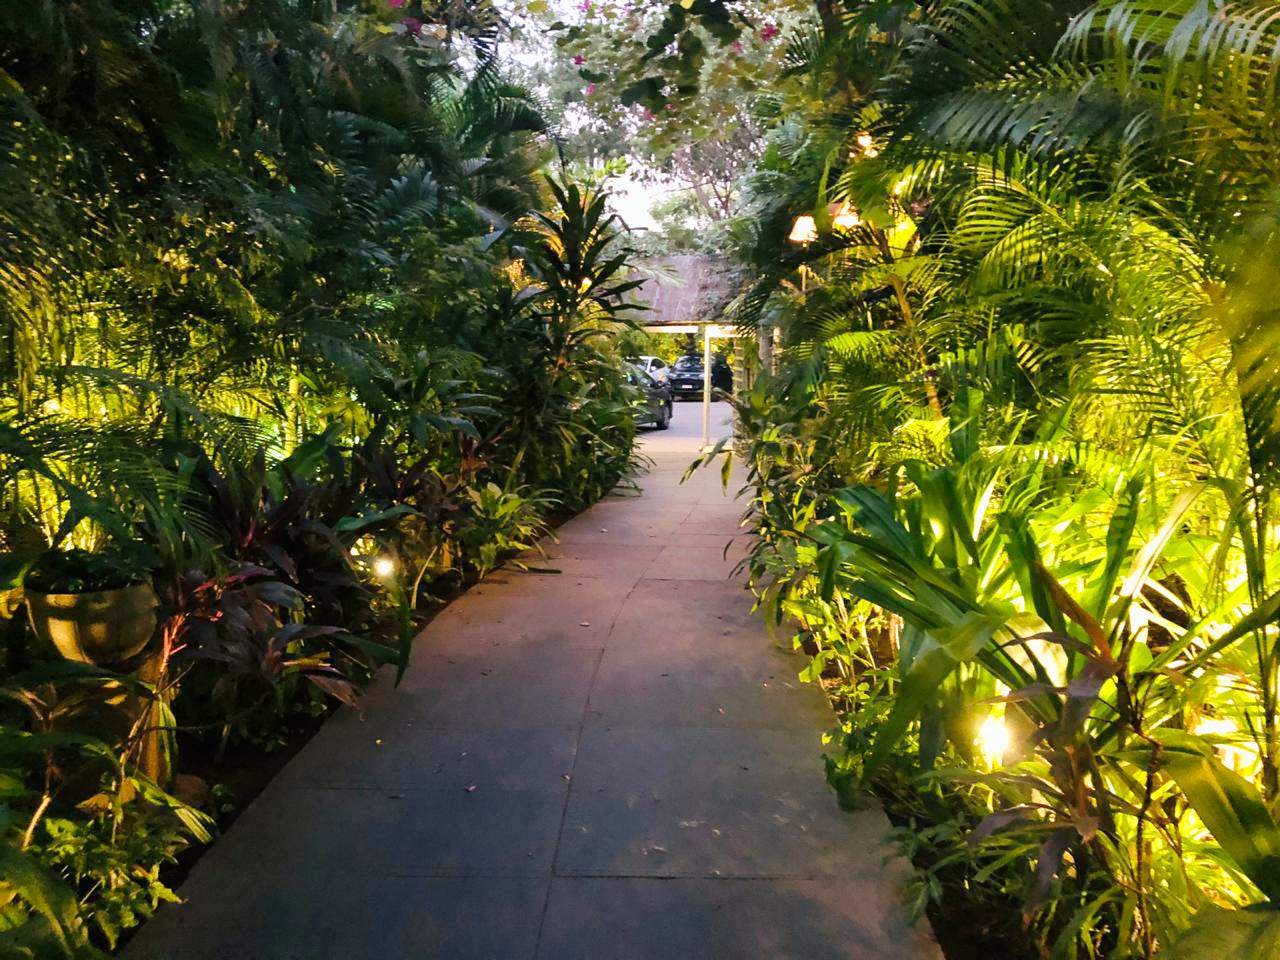 Vegetation,Tree,Light,Botany,Plant,Walkway,Lighting,Leaf,Palm tree,Jungle